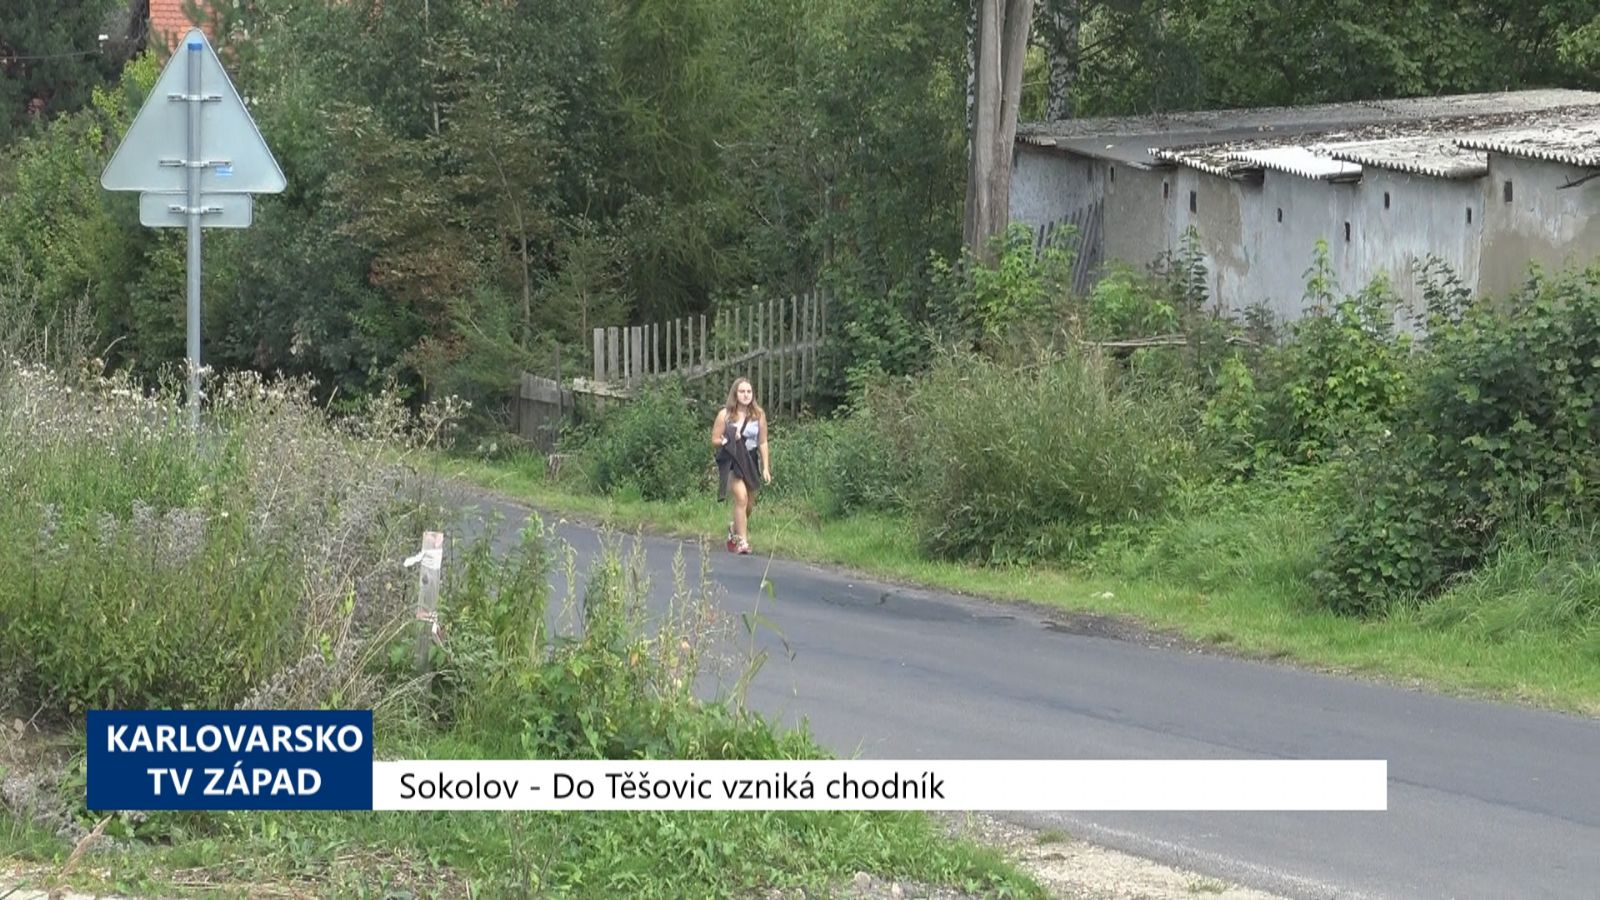 Sokolov: Do Těšovic vzniká chodník (TV Západ)	